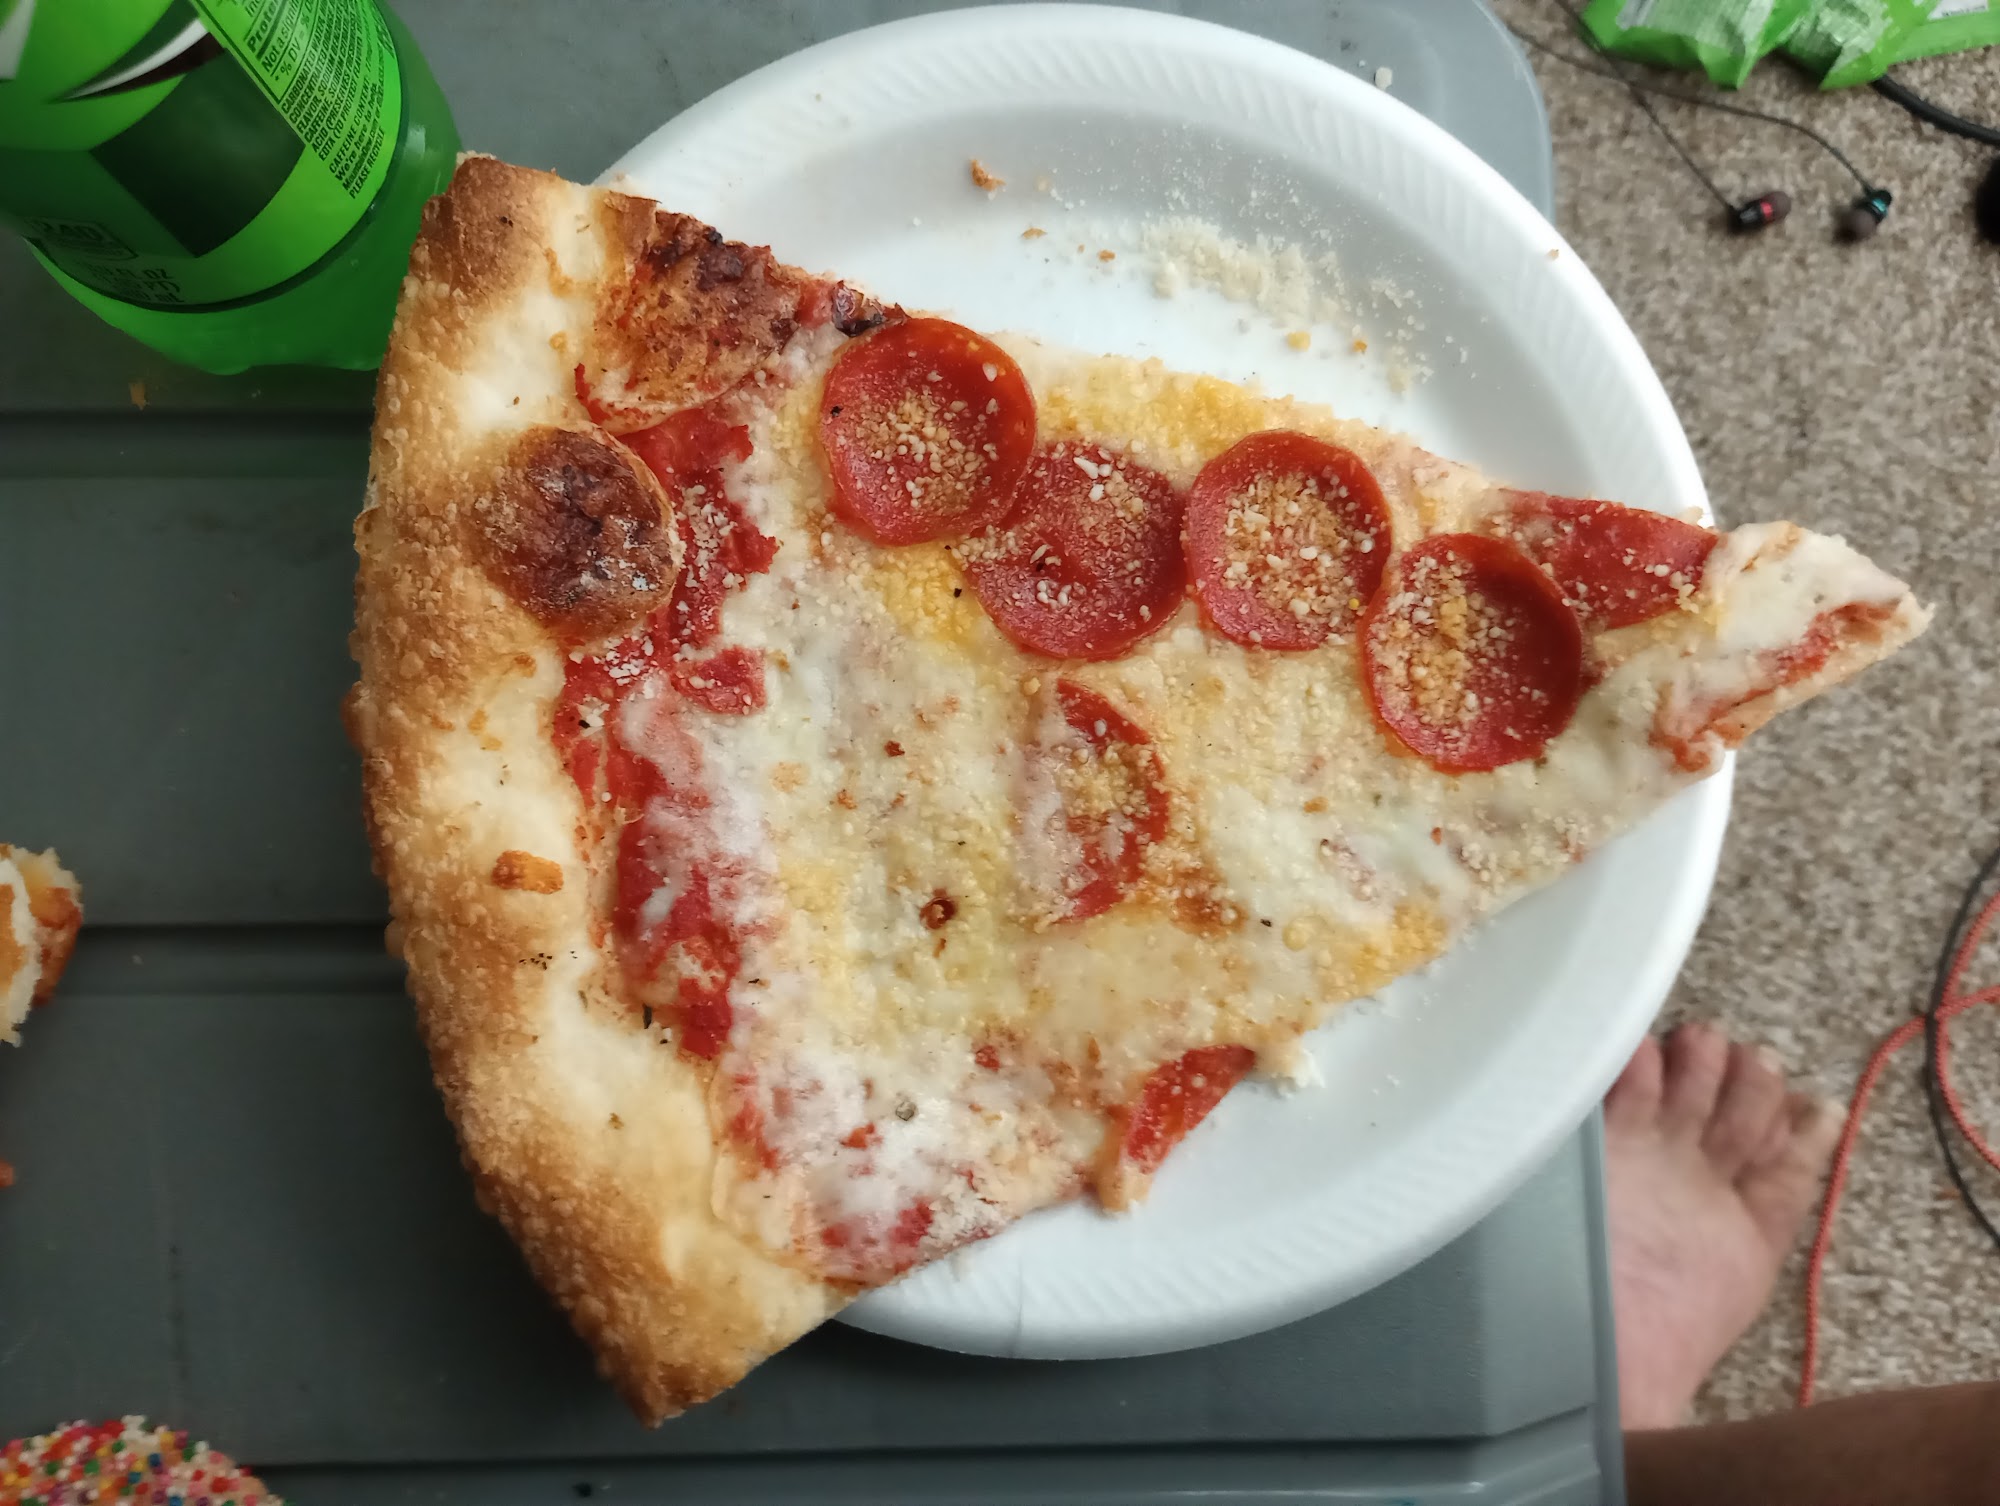 Ferro's Pizza